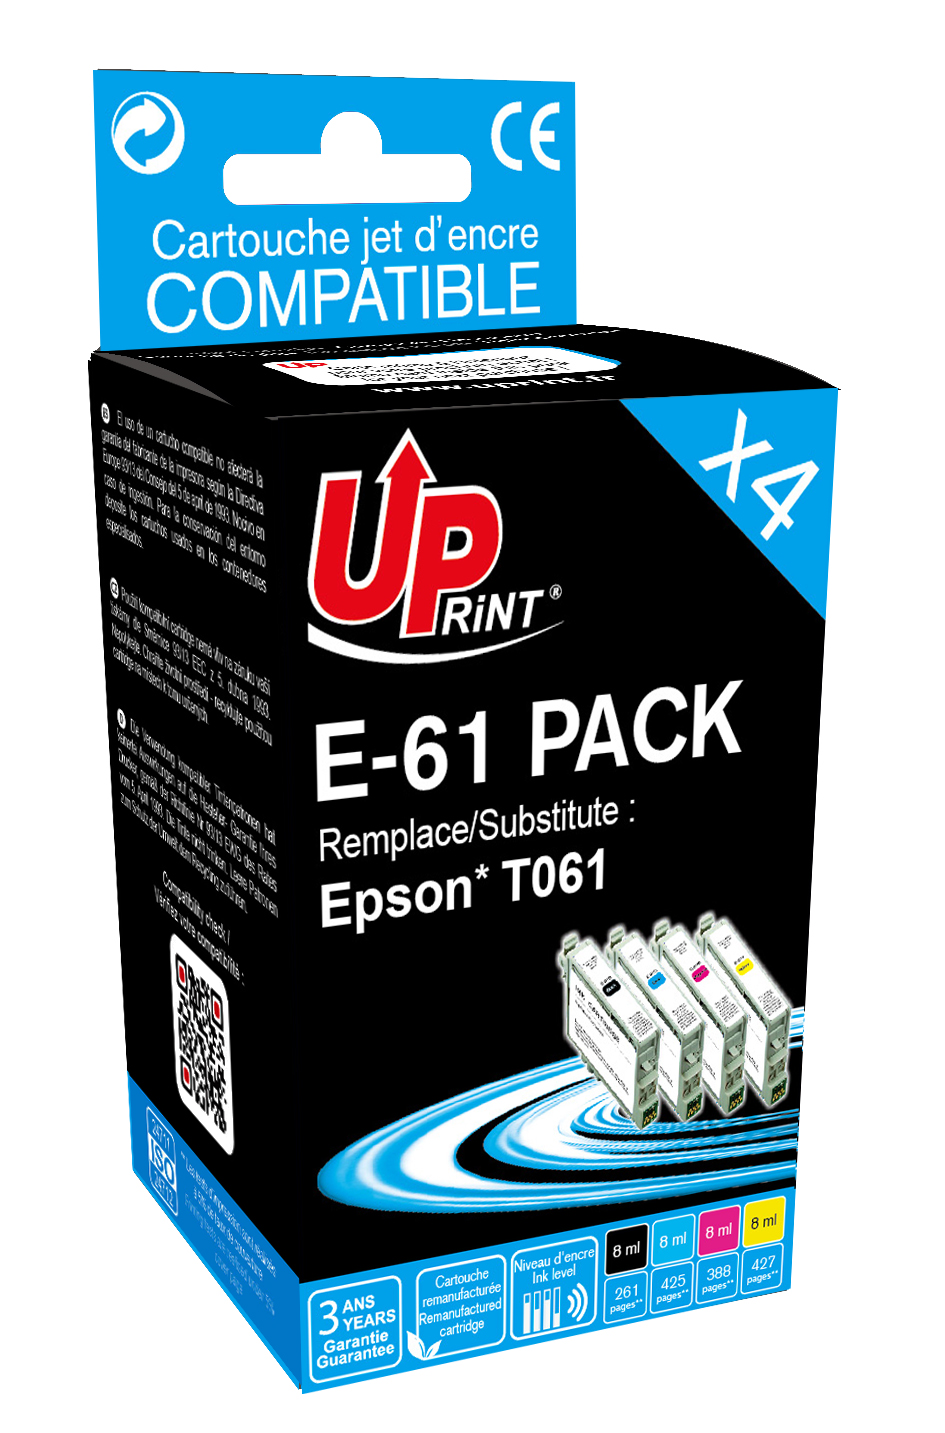 ✓ Pack UPrint compatible EPSON T061, 4 cartouches couleur pack en